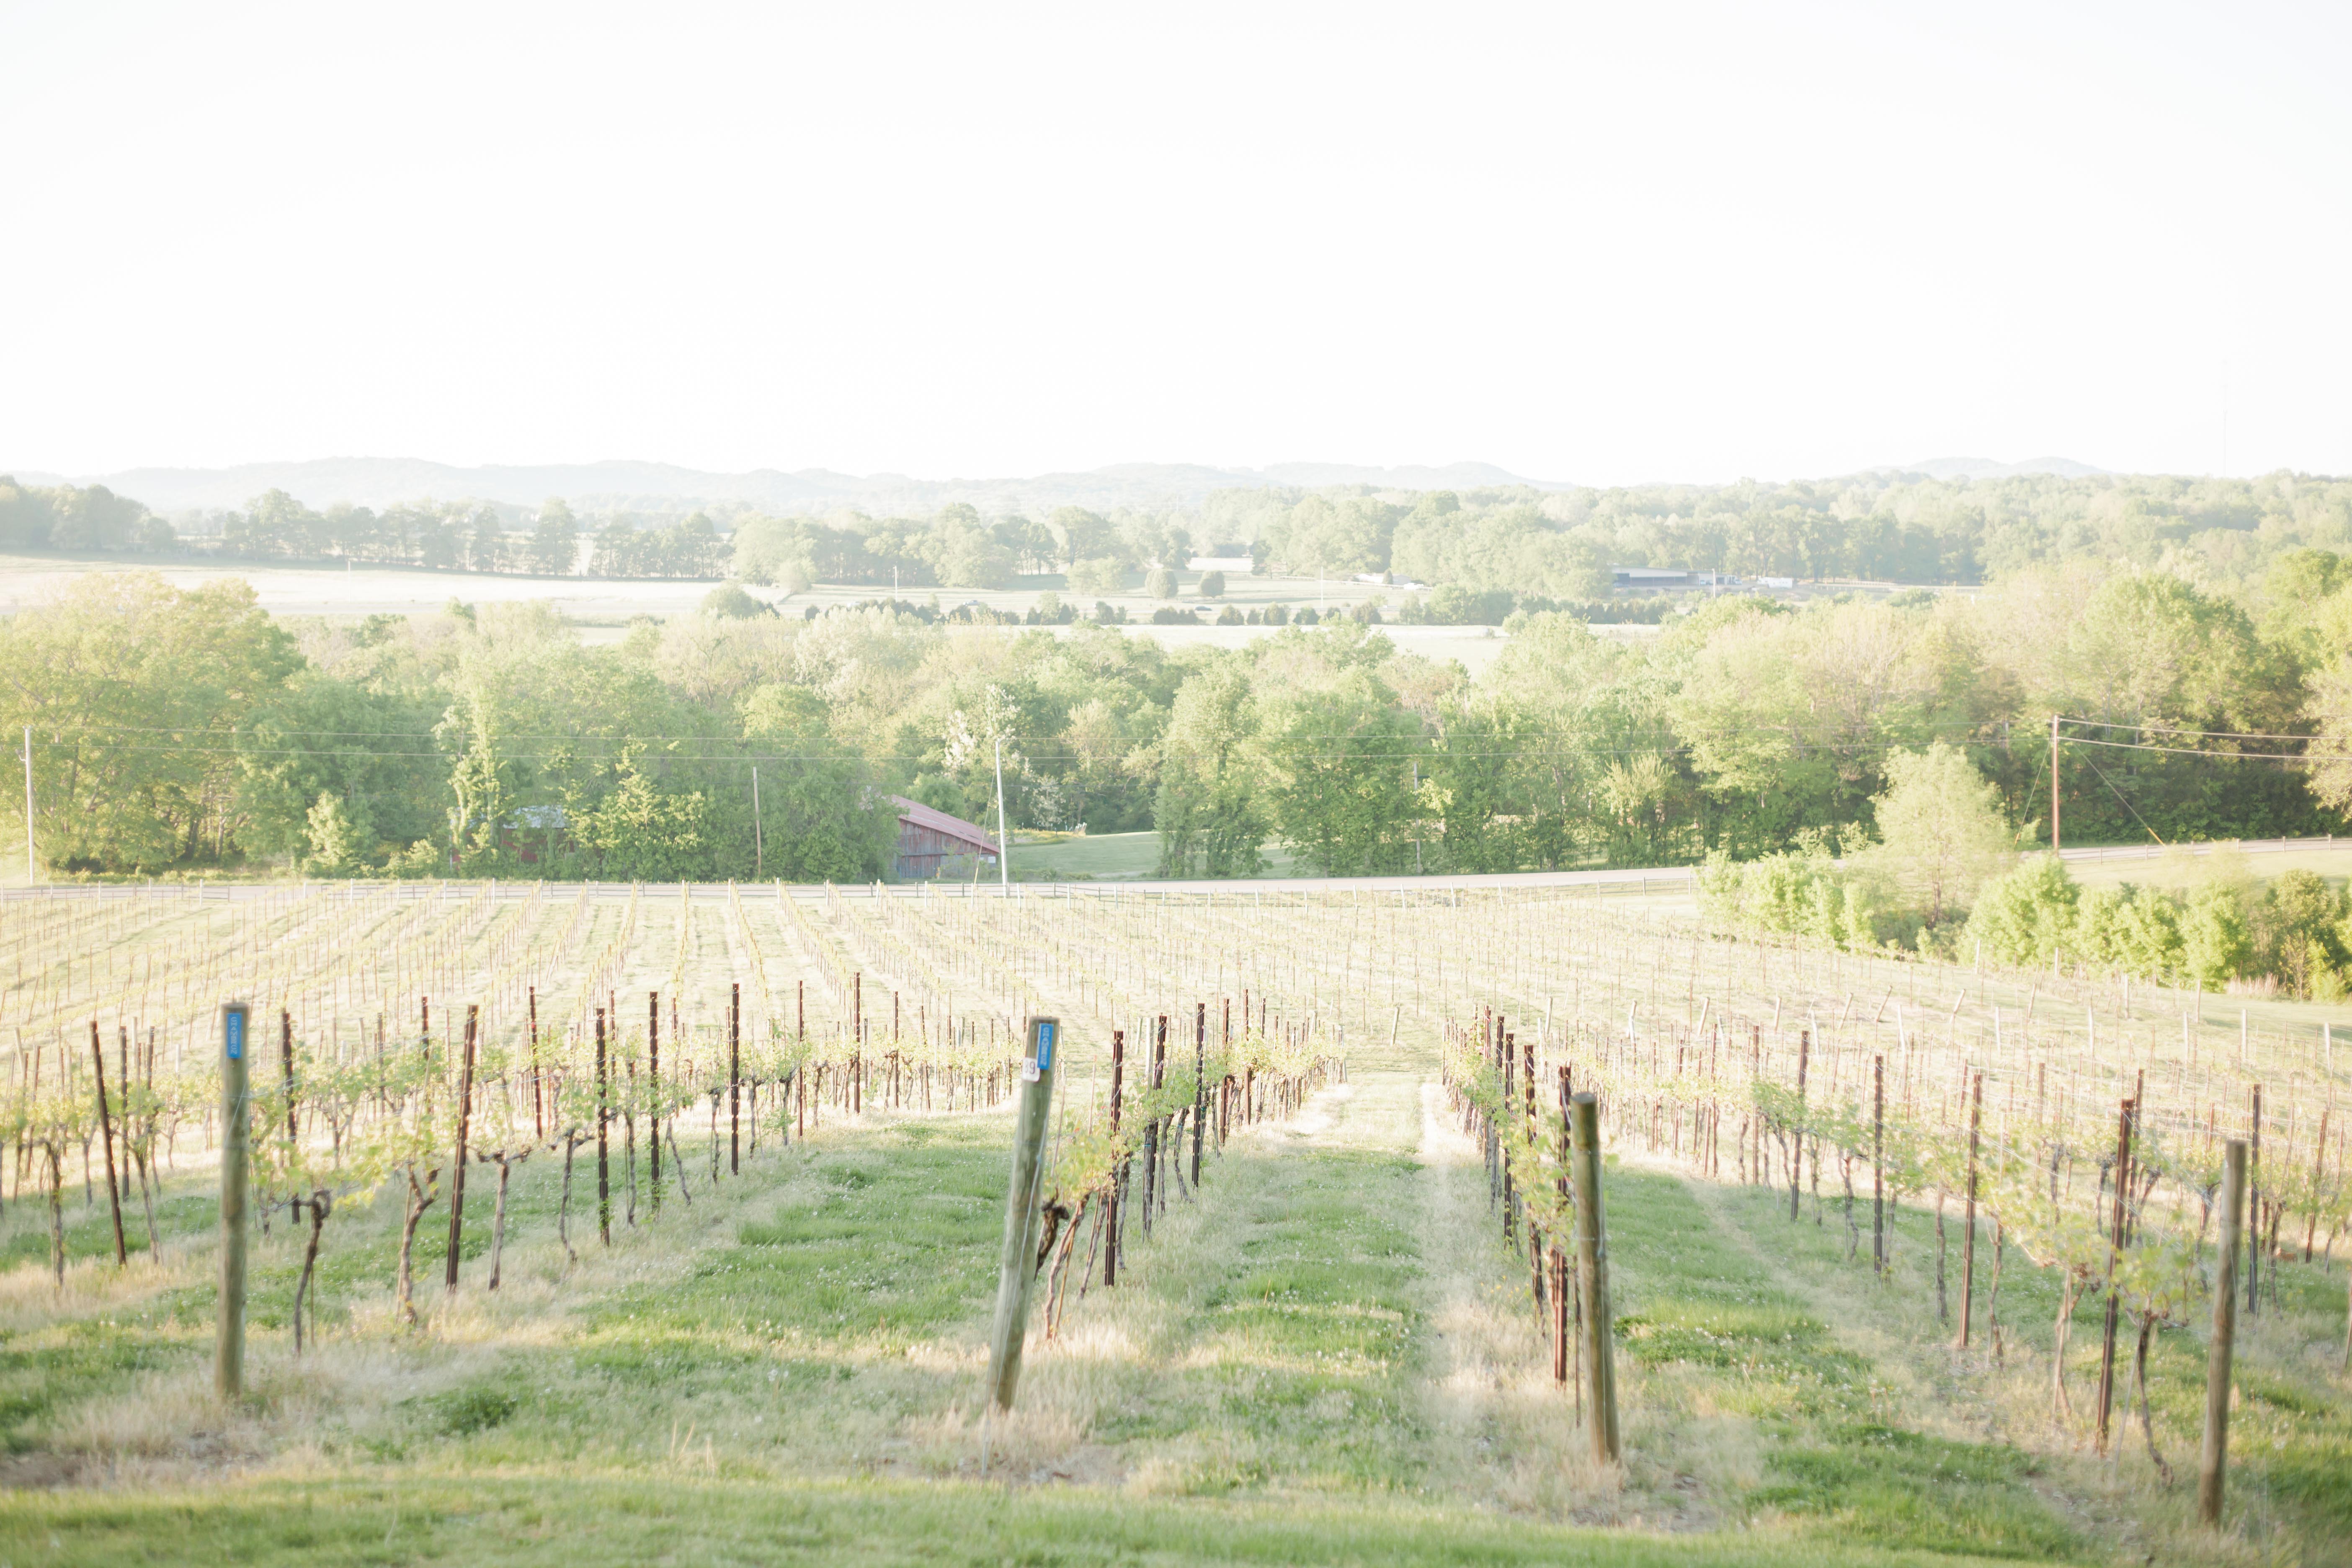 rows of vineyard vines in tennessee